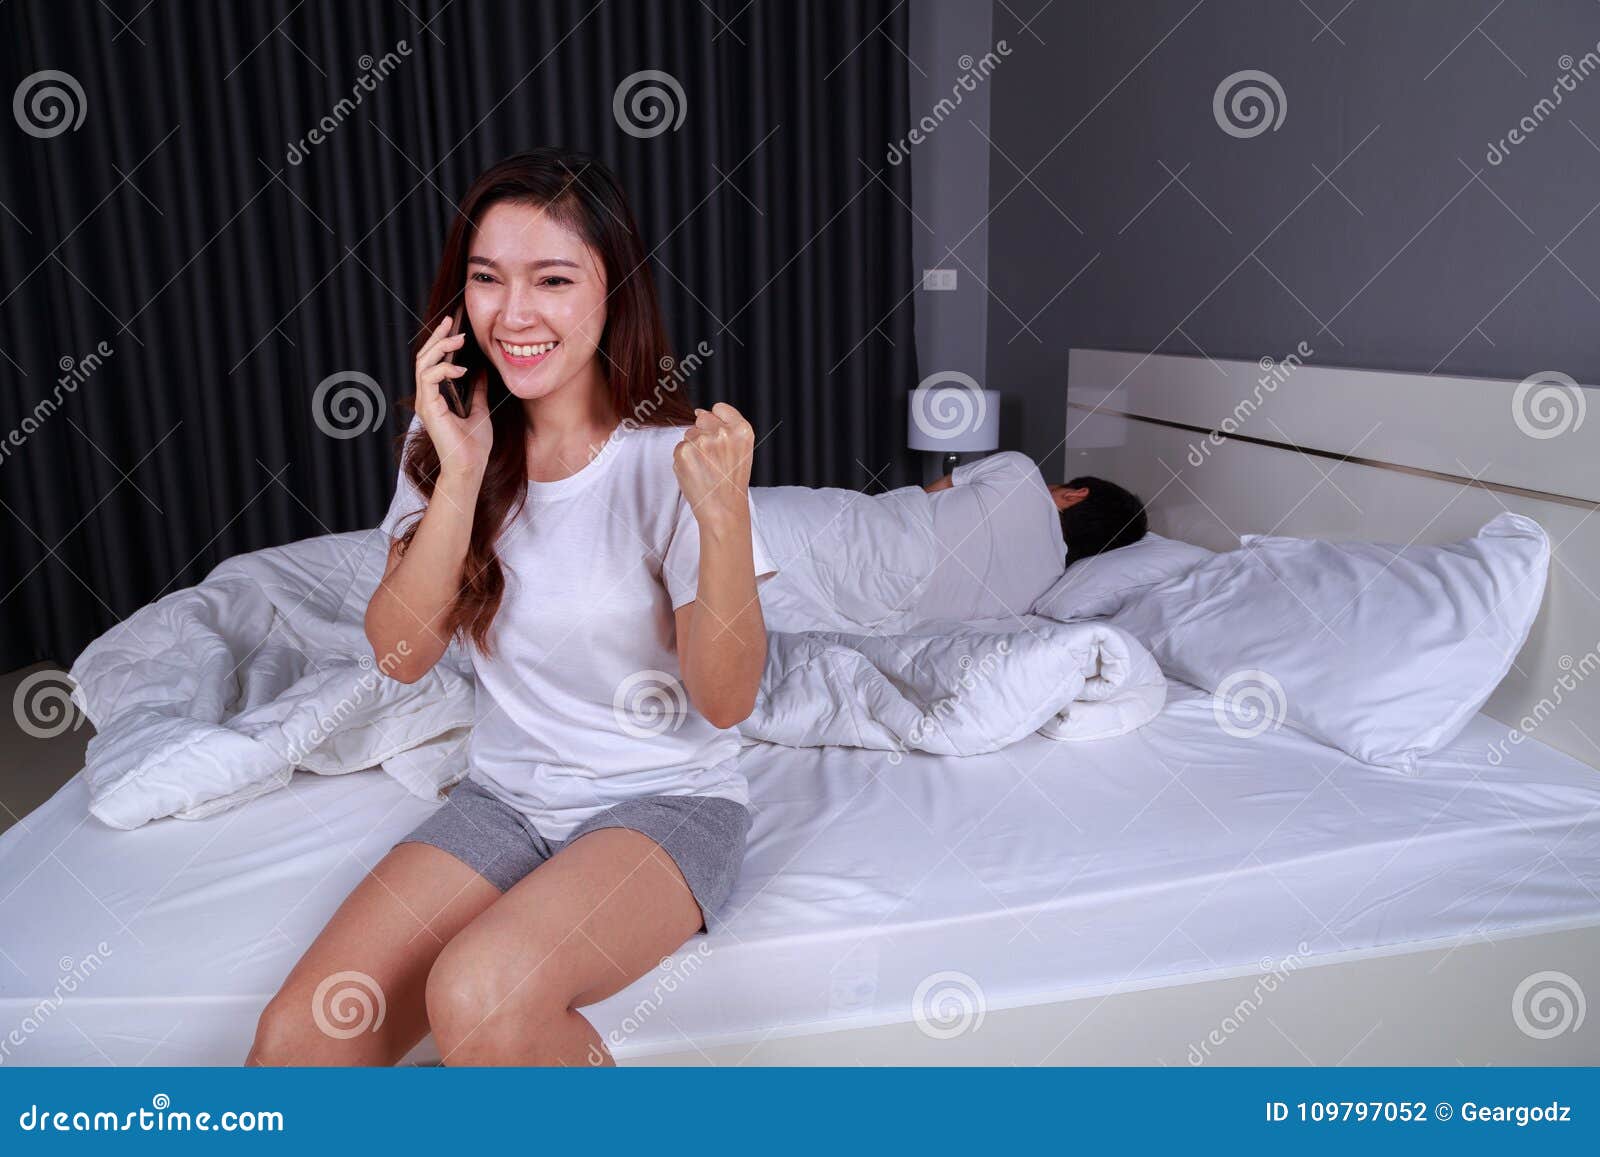 Сестра сидит в телефоне. В постели с телефоном. Девушка разговаривает по телефону на кровати. Девушка с телефоном в кровати. Девушка в постели с телефоном.